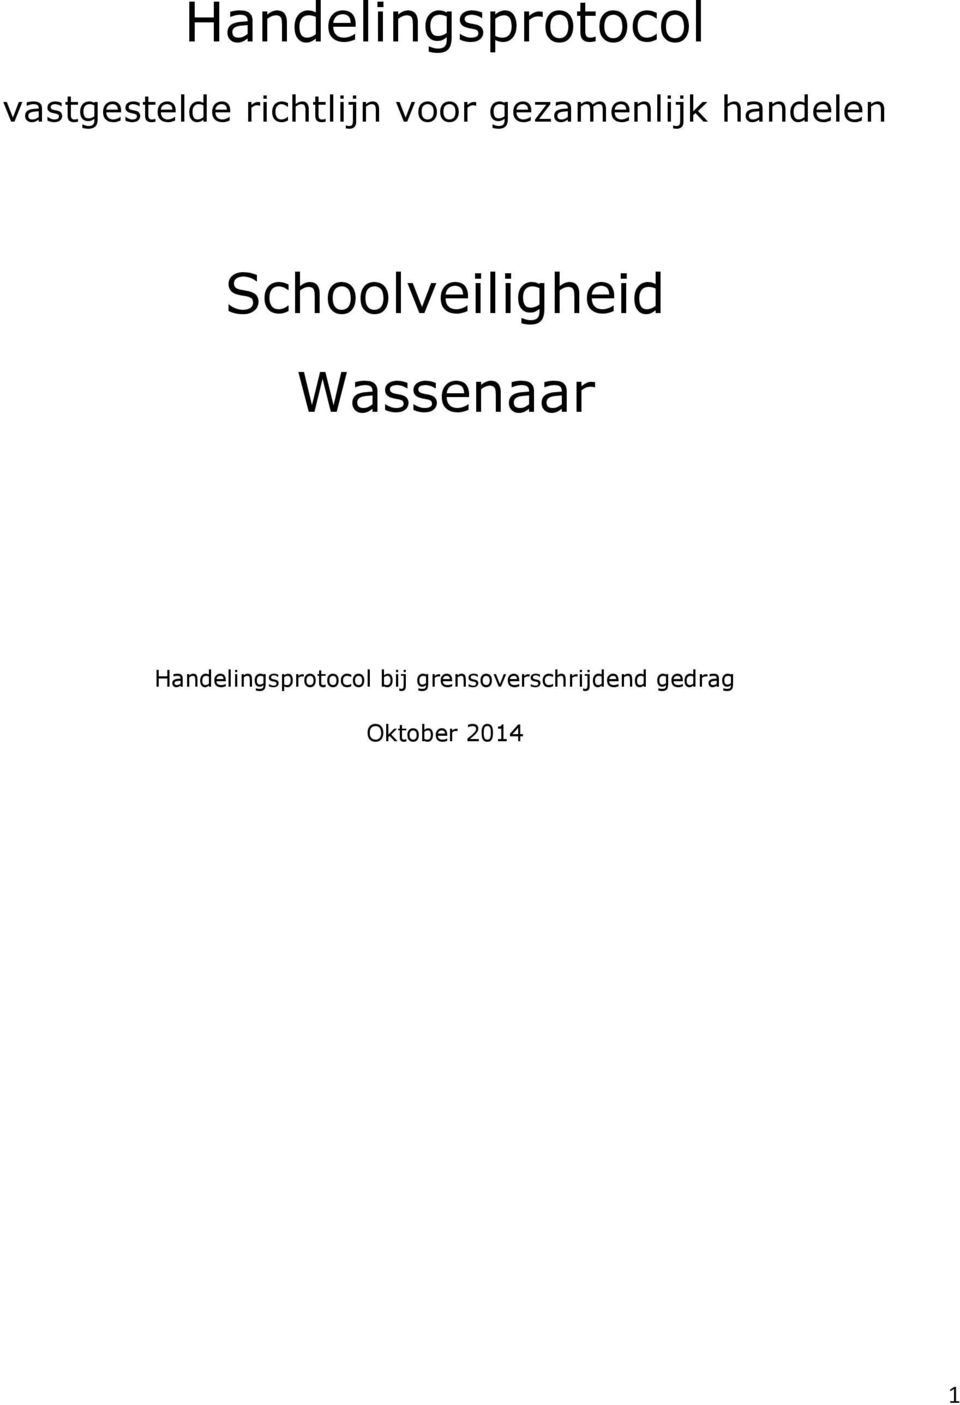 Schoolveiligheid Wassenaar